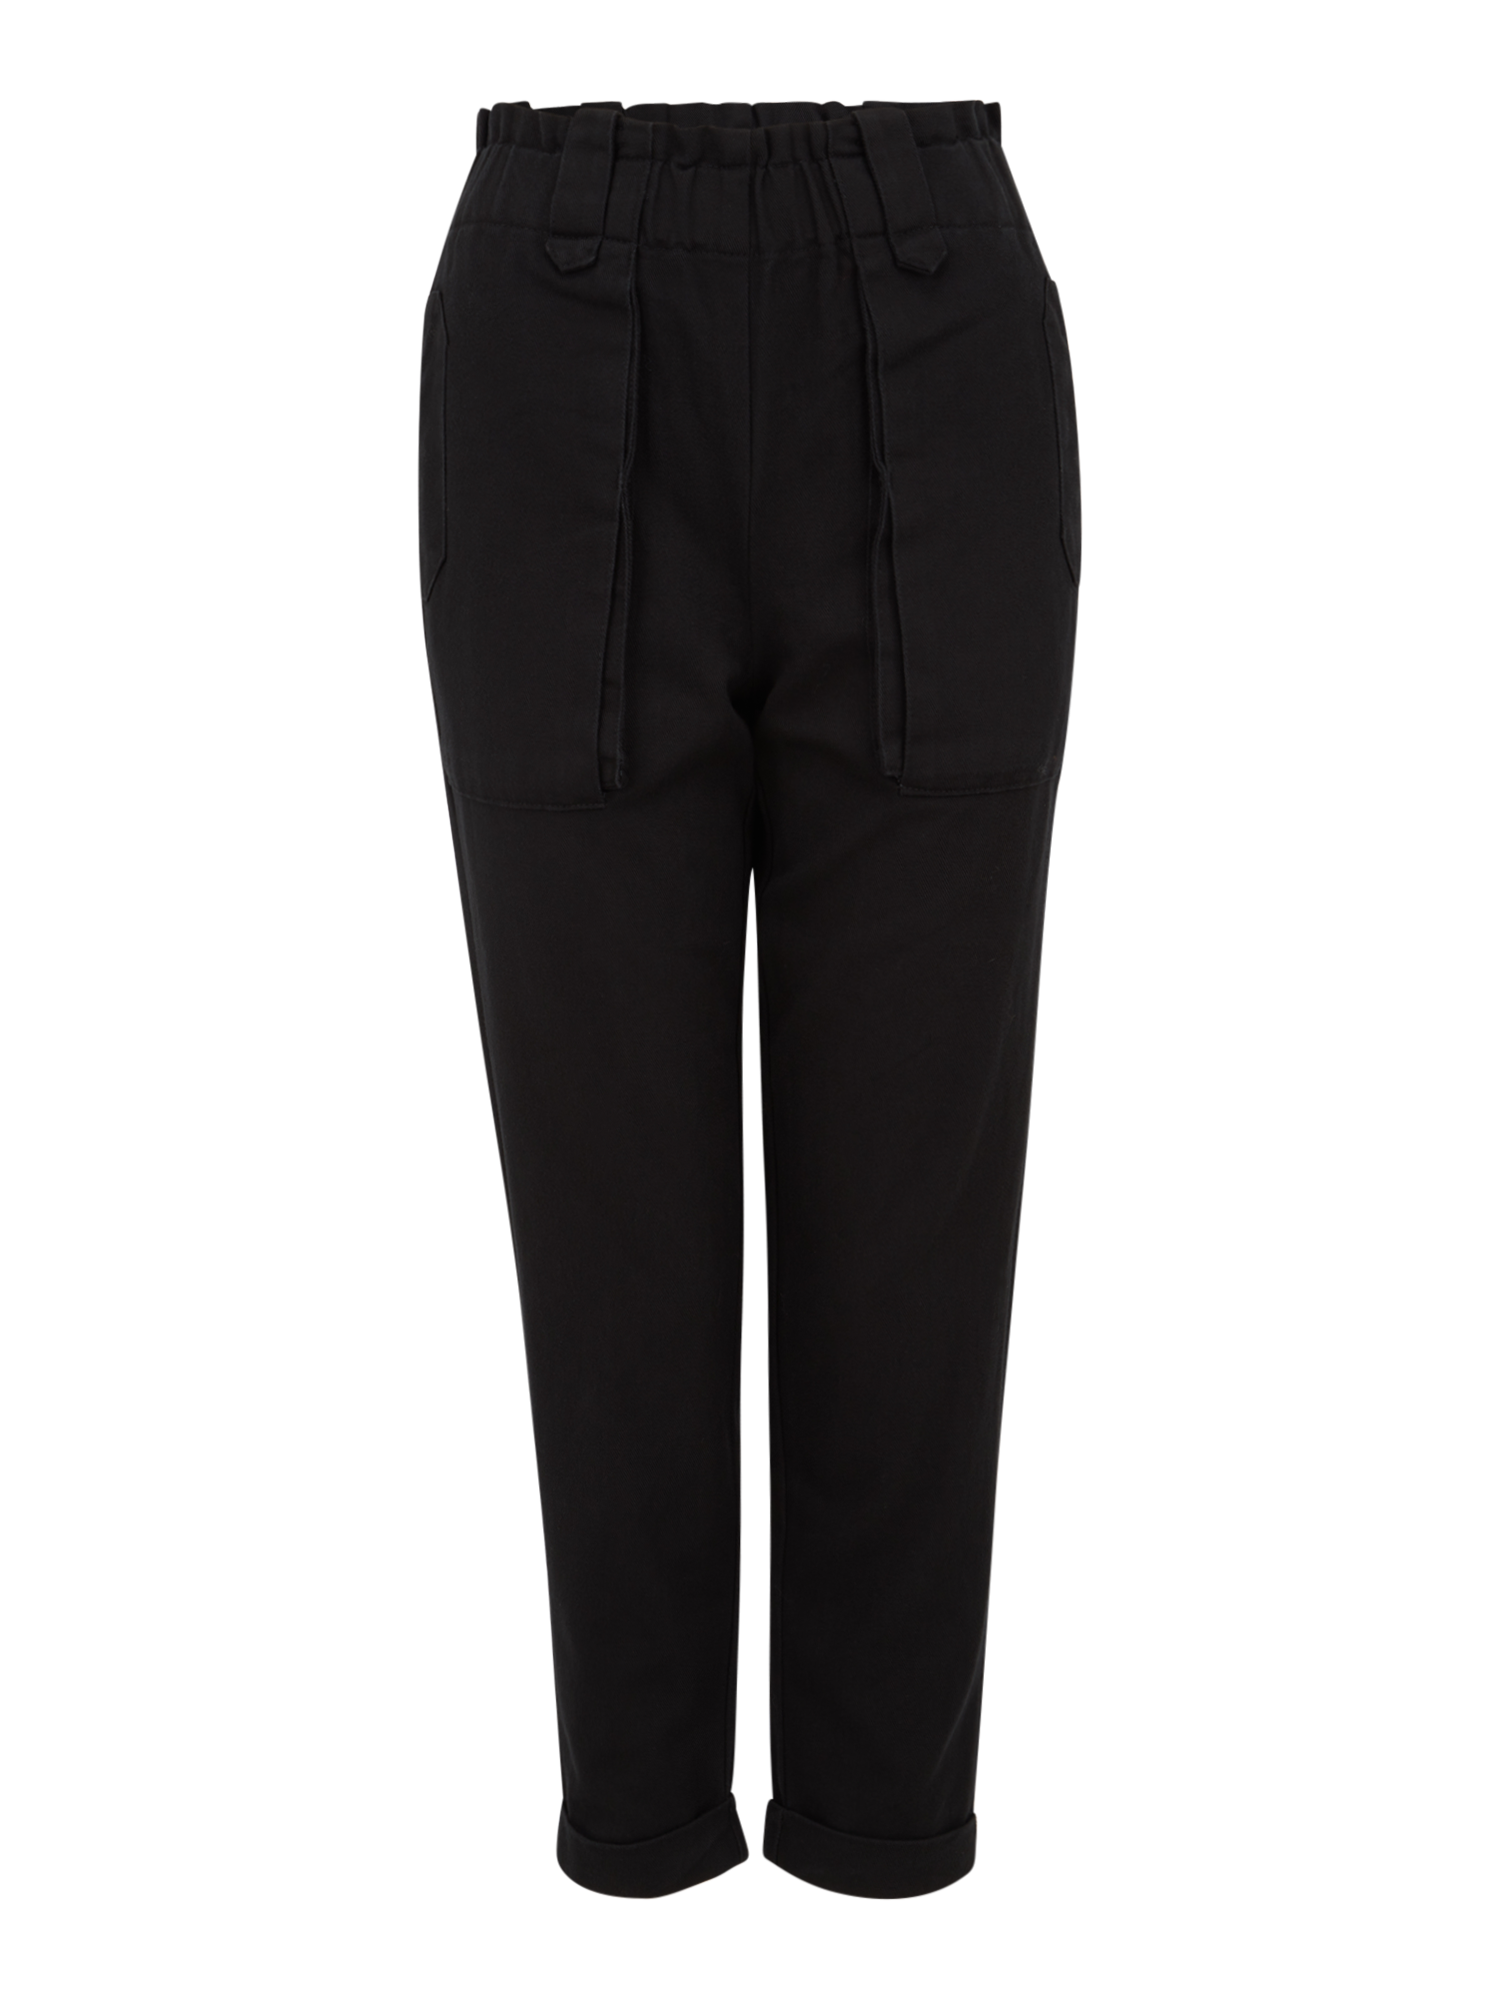 fHVIC Odzież OBJECT Petite Spodnie MILENE w kolorze Czarnym 